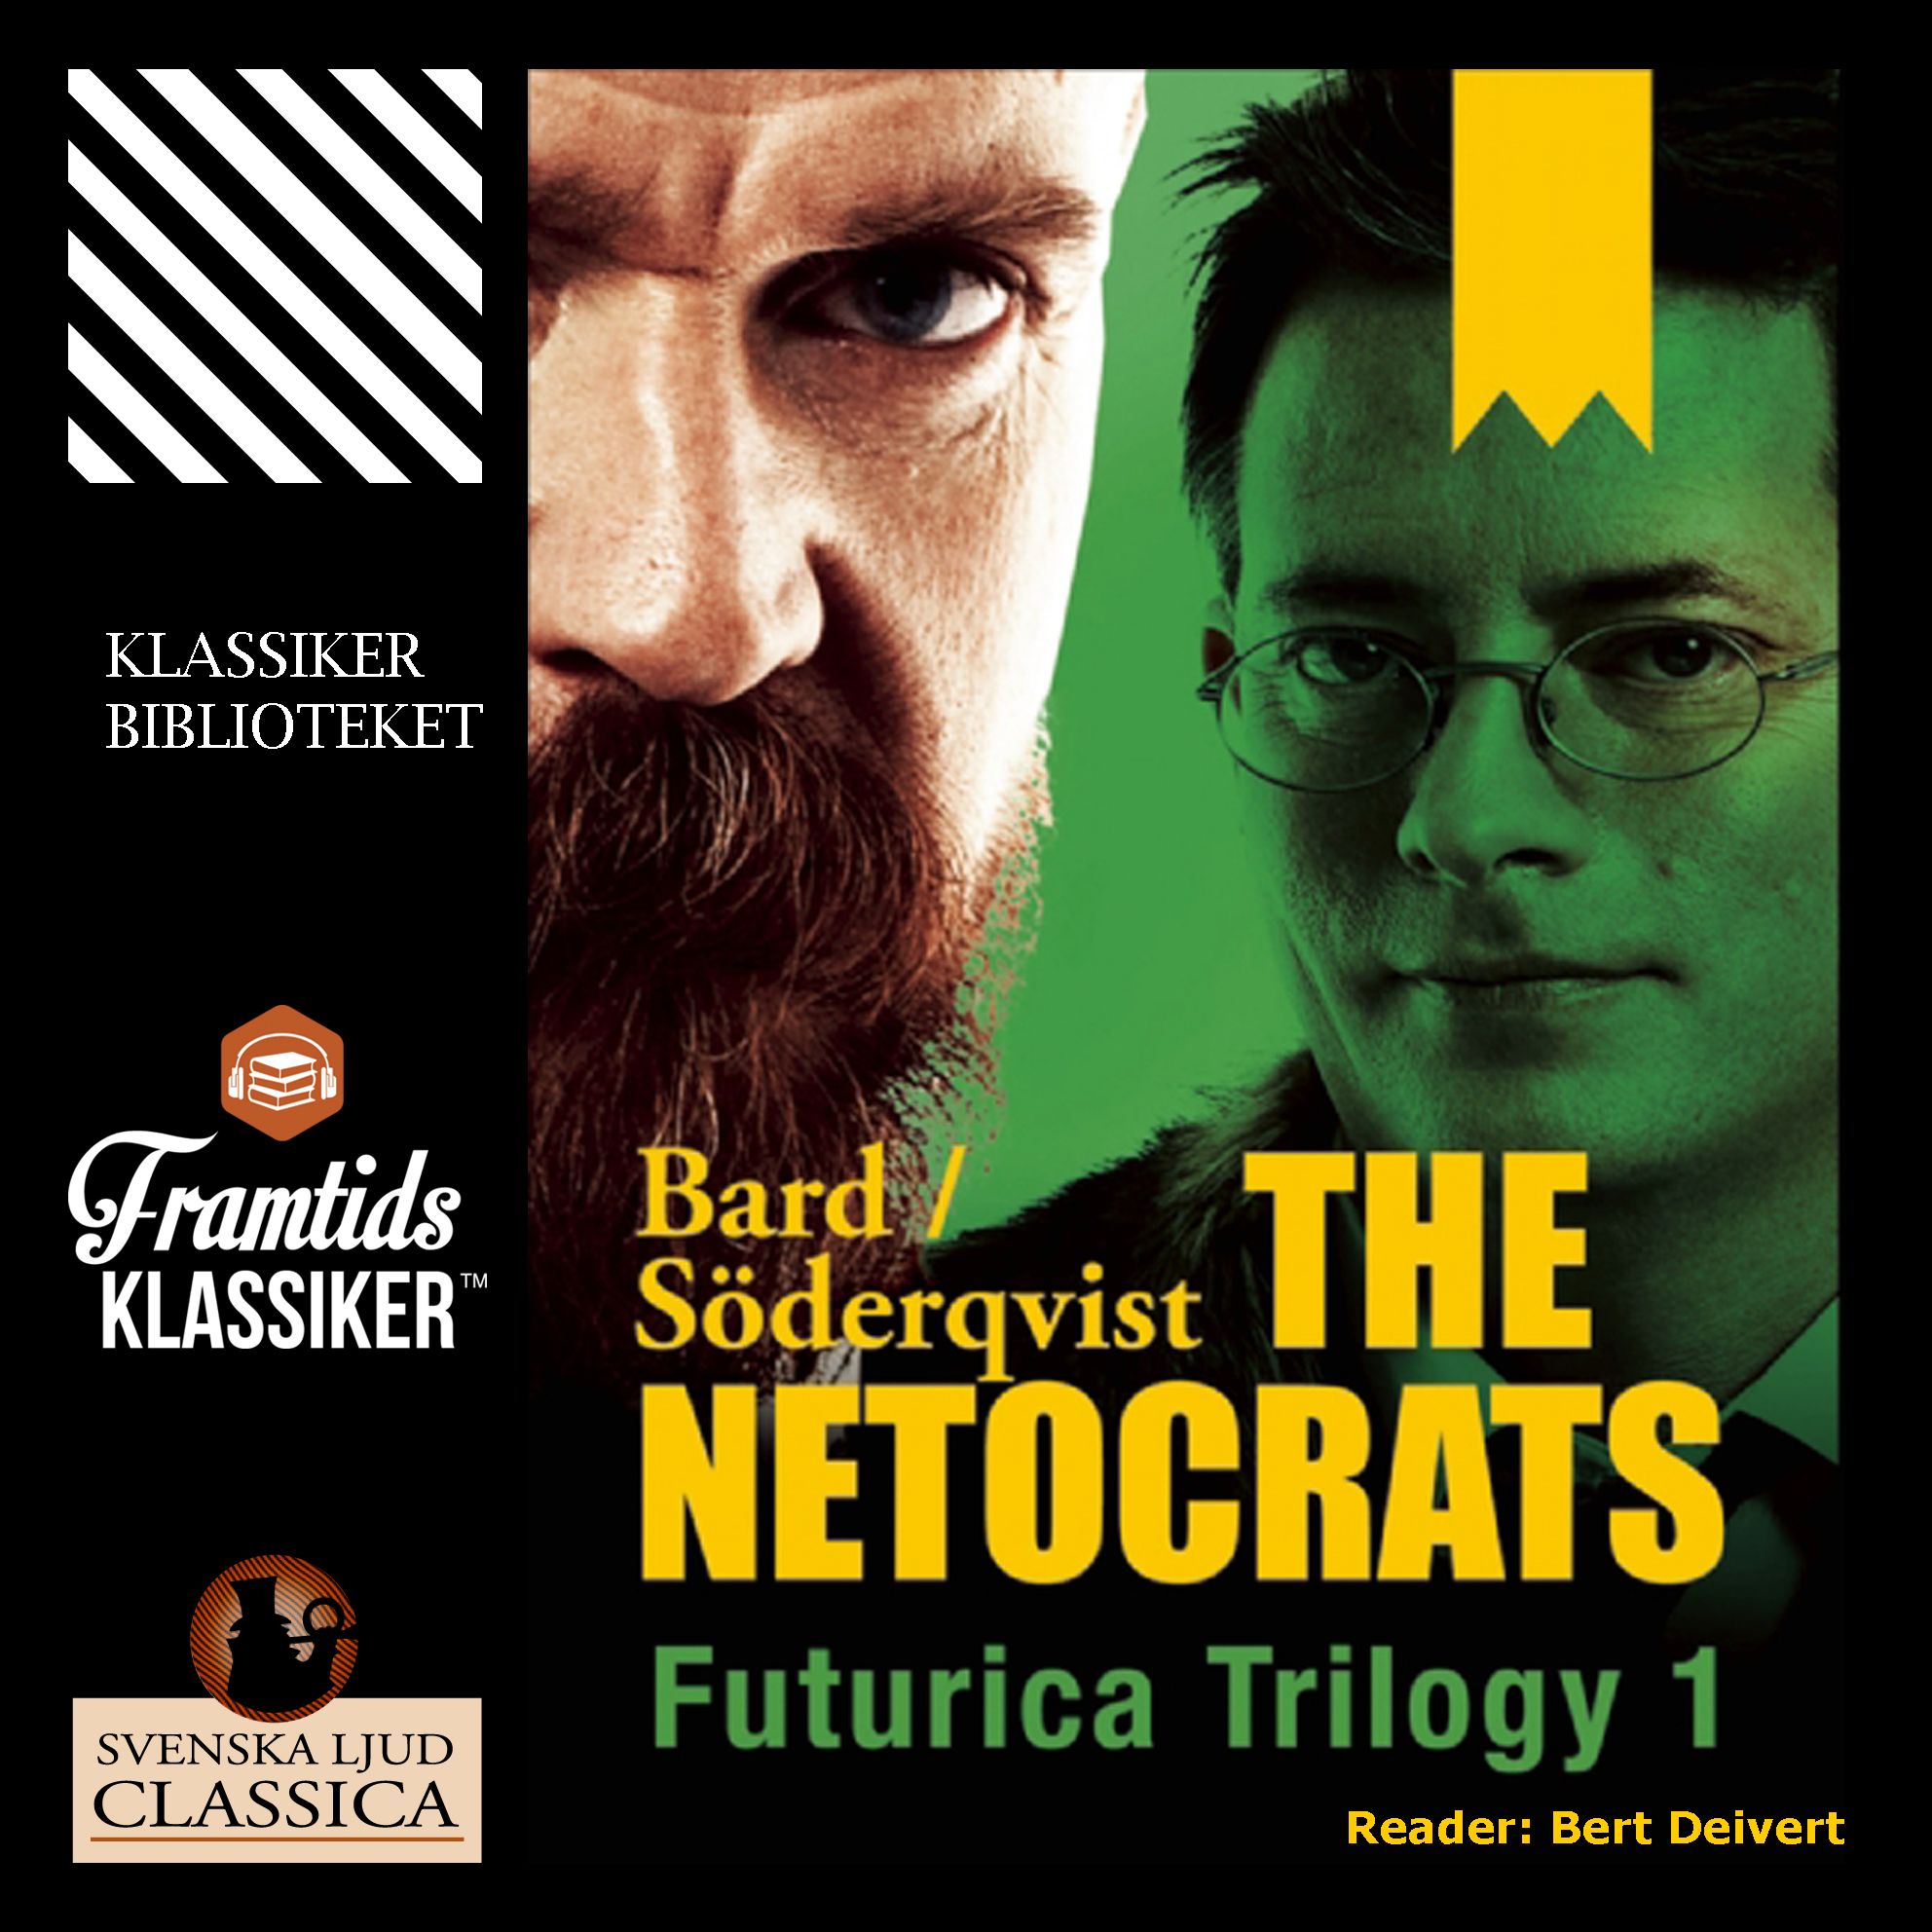 The Netocrats, ljudbok av Alexander Bard, Jan Söderqvist